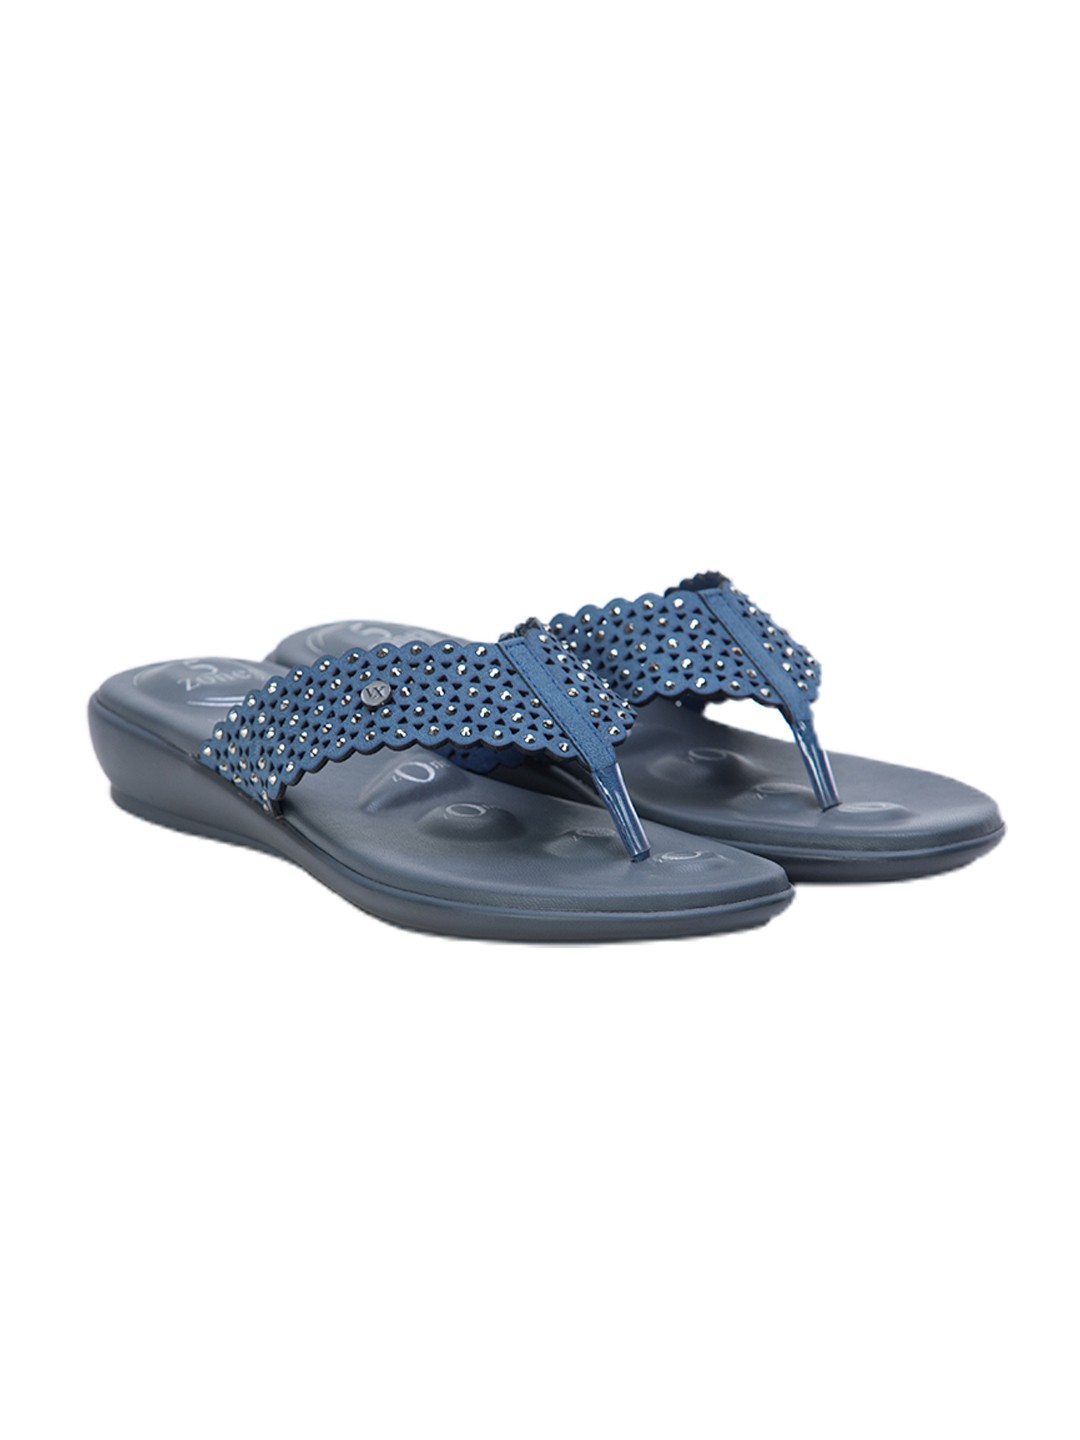 Buy Von Wellx Germany Comfort Gleam Blue Slippers Online in Karnataka